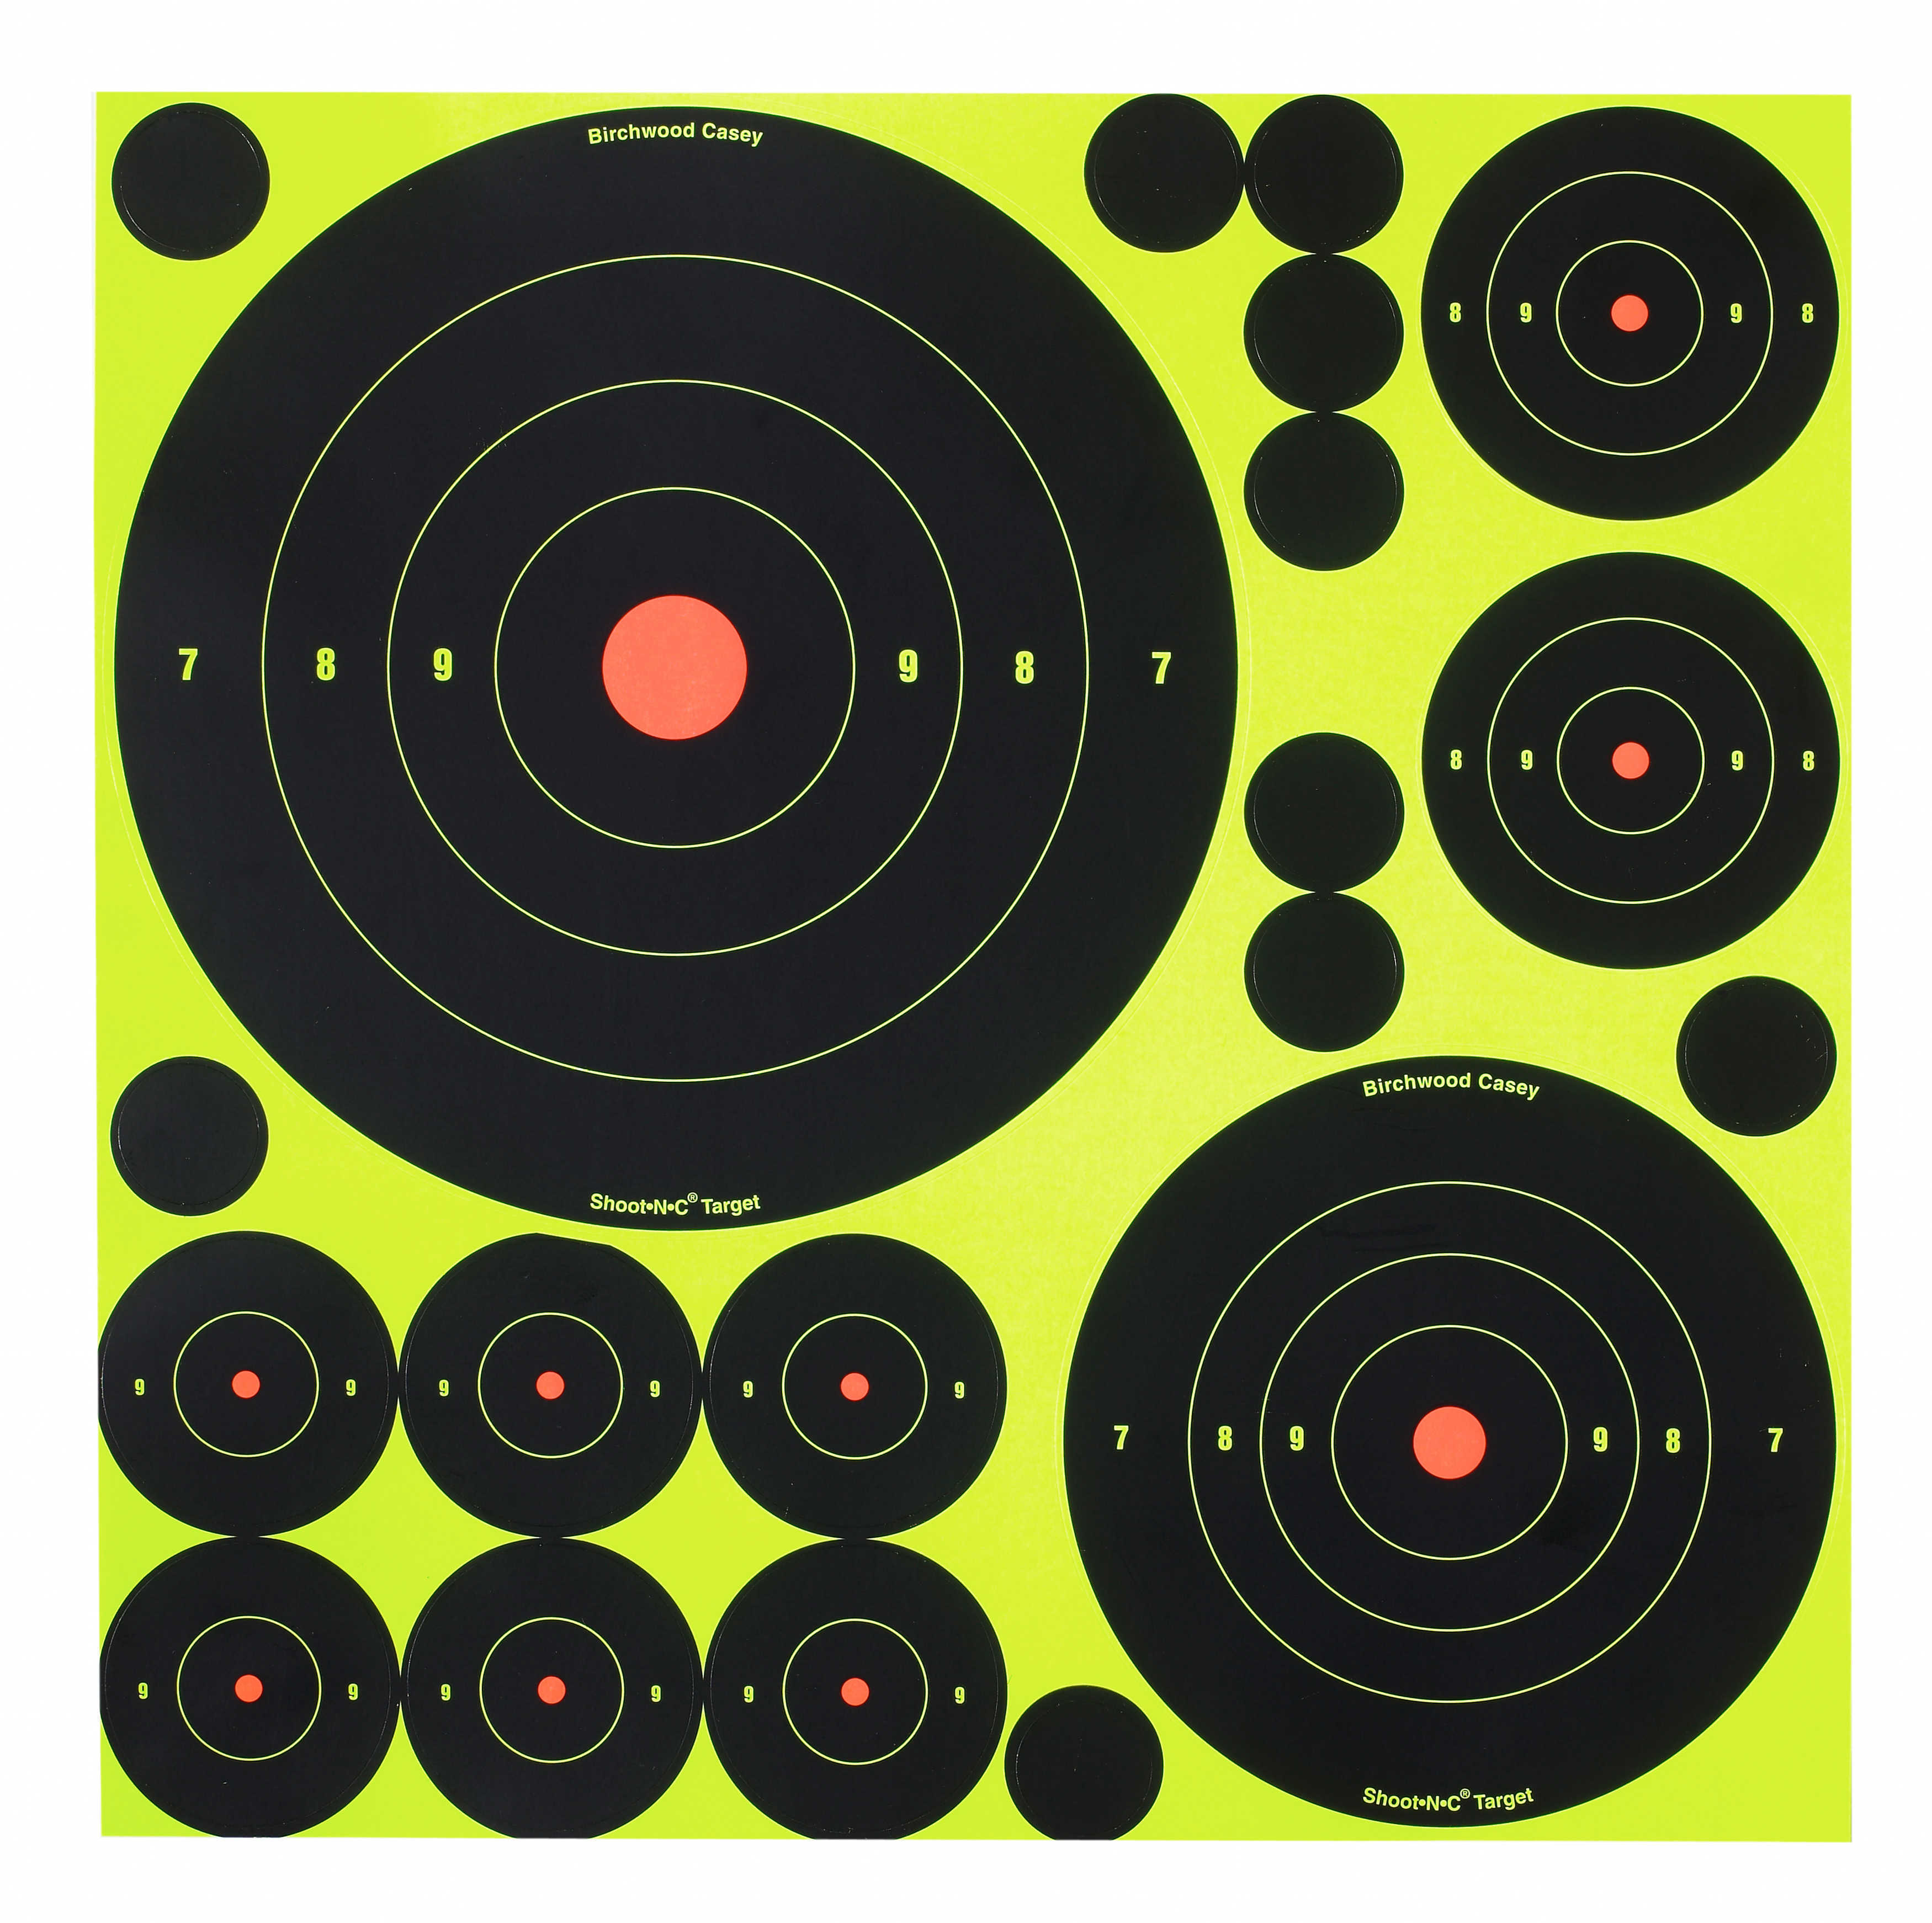 Shoot-N-C Asst 1 2 3 6 & 8 Bulls-Eye Target 5 Sheets